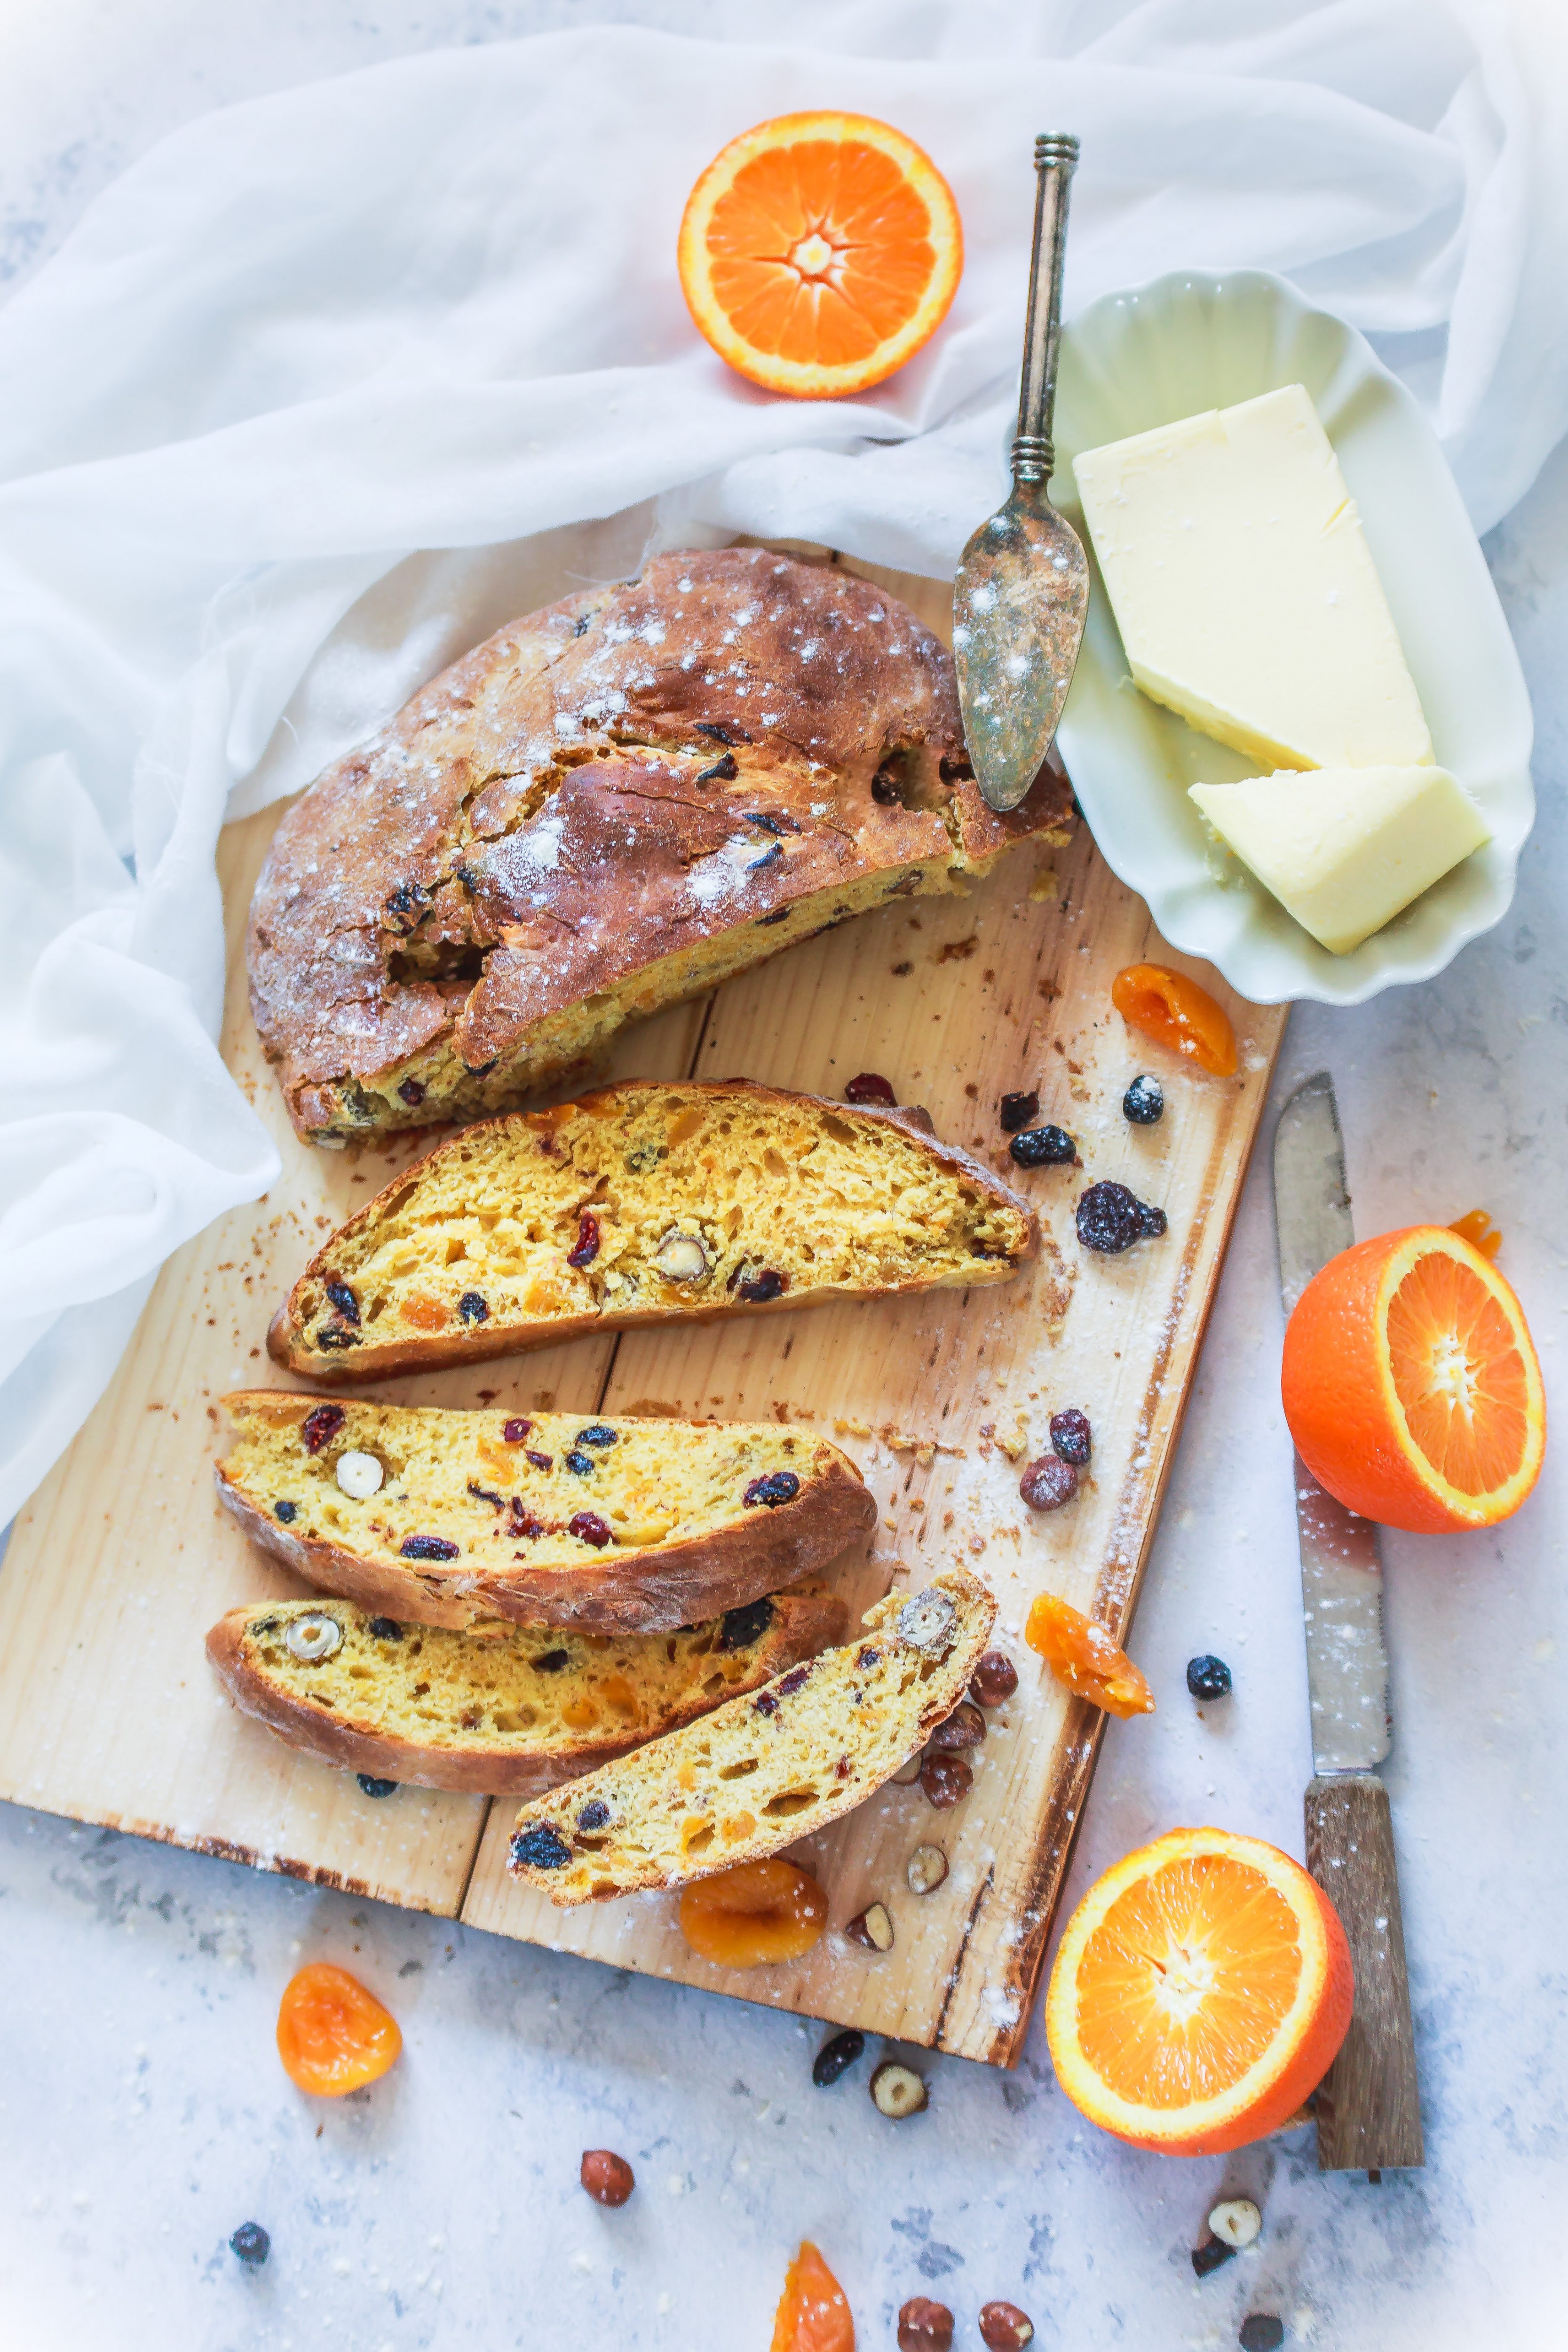 Recette du pain brioché aux abricots, noisettes, pruneaux et jus d'orange.
Photographe et styliste culinaire France.